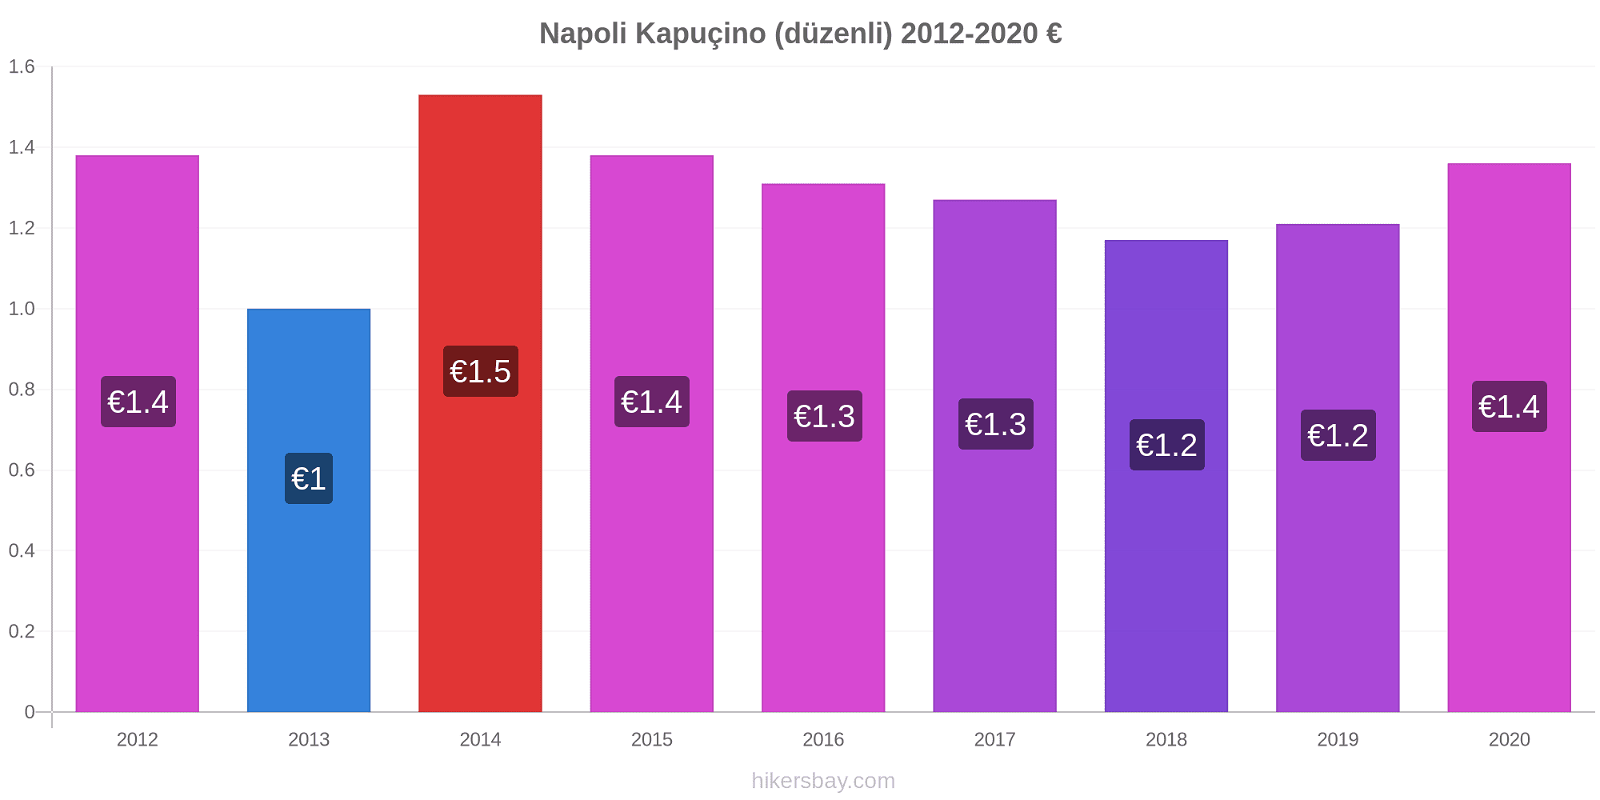 Napoli fiyat değişiklikleri Kapuçino (düzenli) hikersbay.com